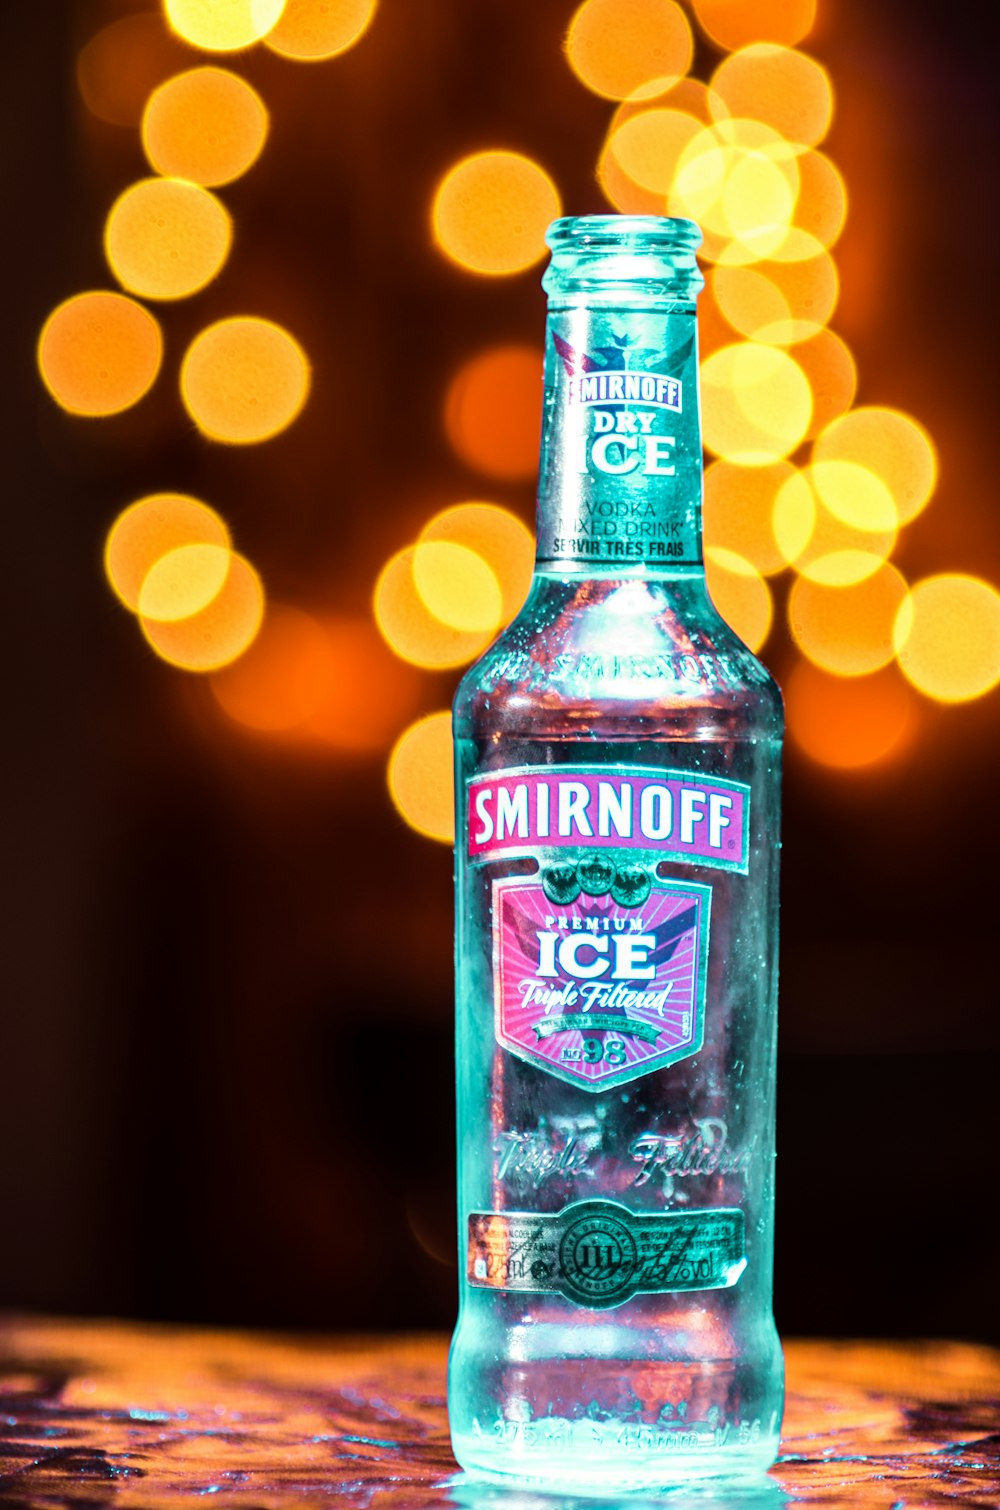 Smirnoff premium ice bottle